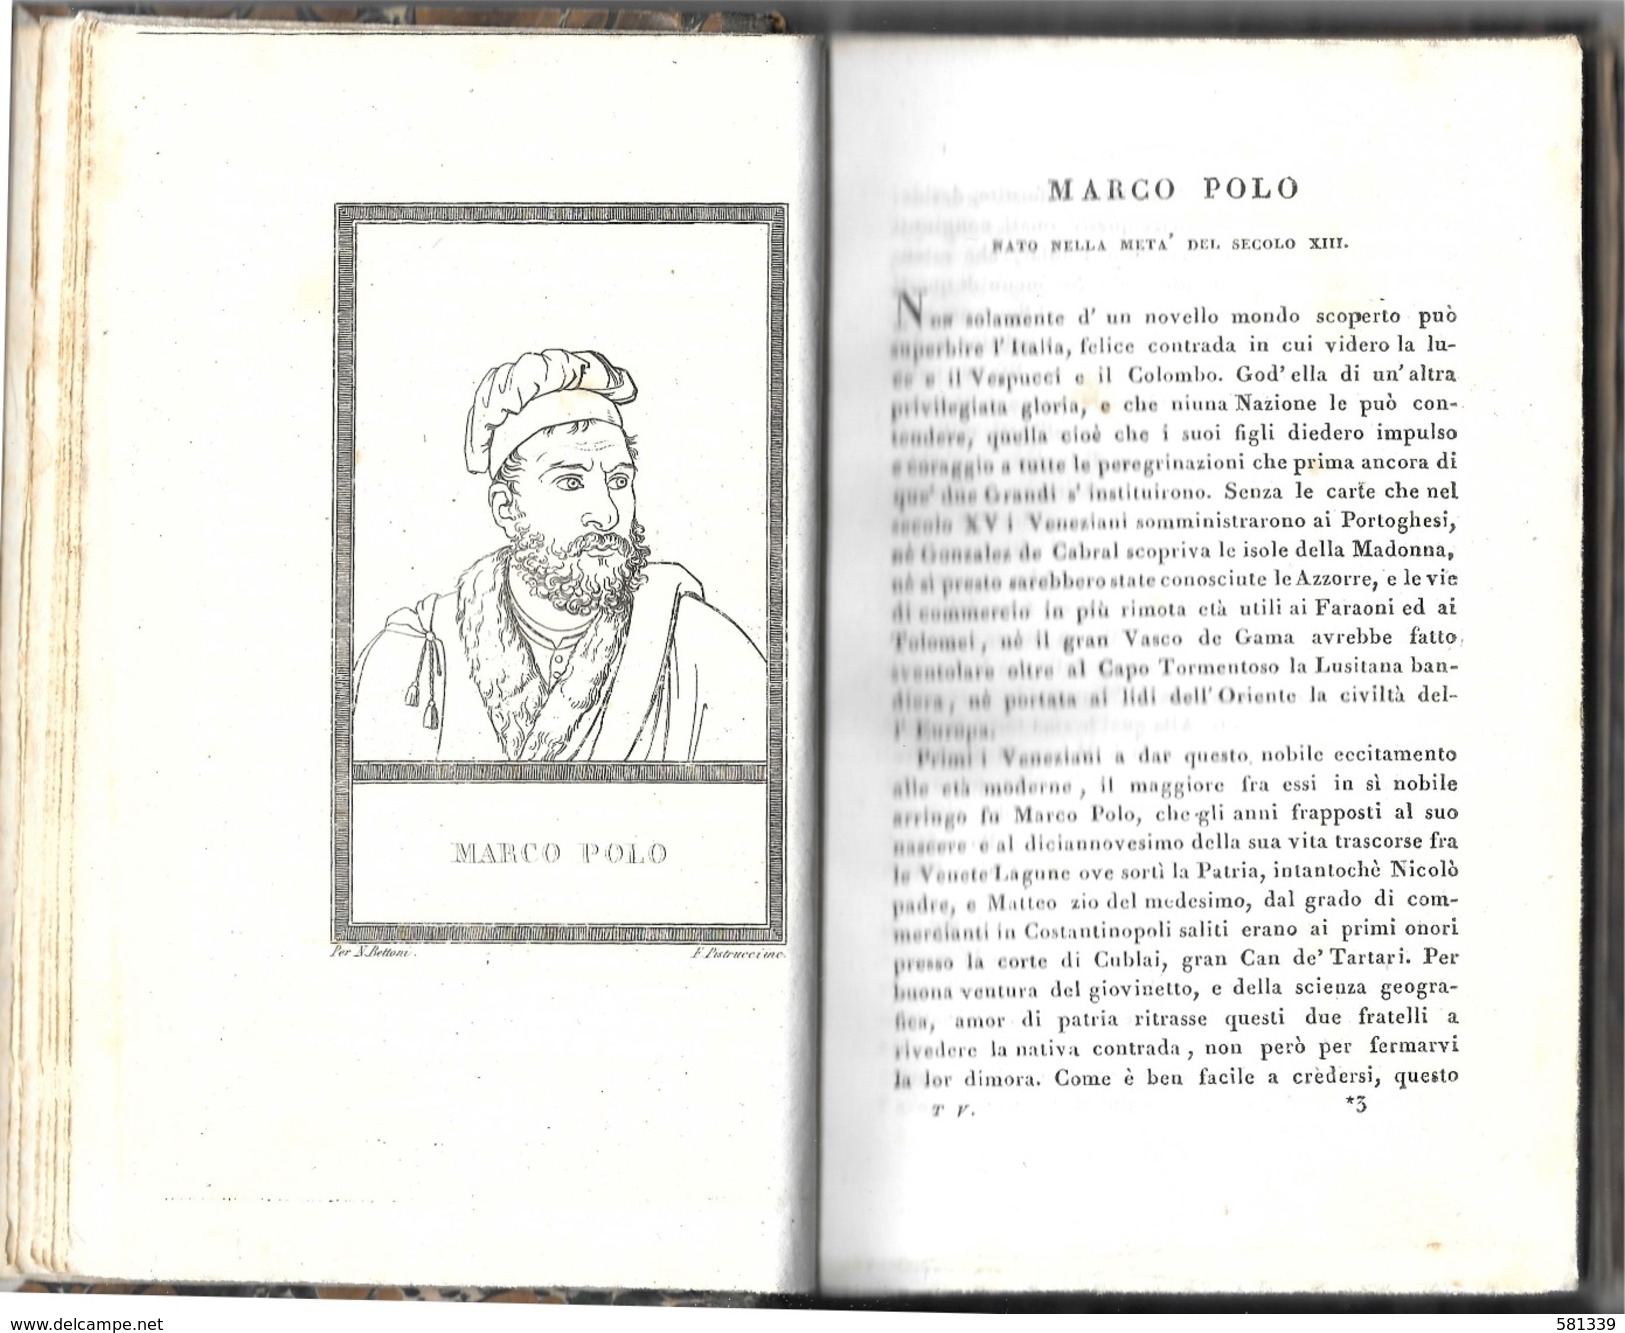 " VITE E RITRATTI Di UOMINI CELEBRI " Nicolò Bettoni 1821 , Con 40 Incisioni , Vol.5-6 - Bibliographie